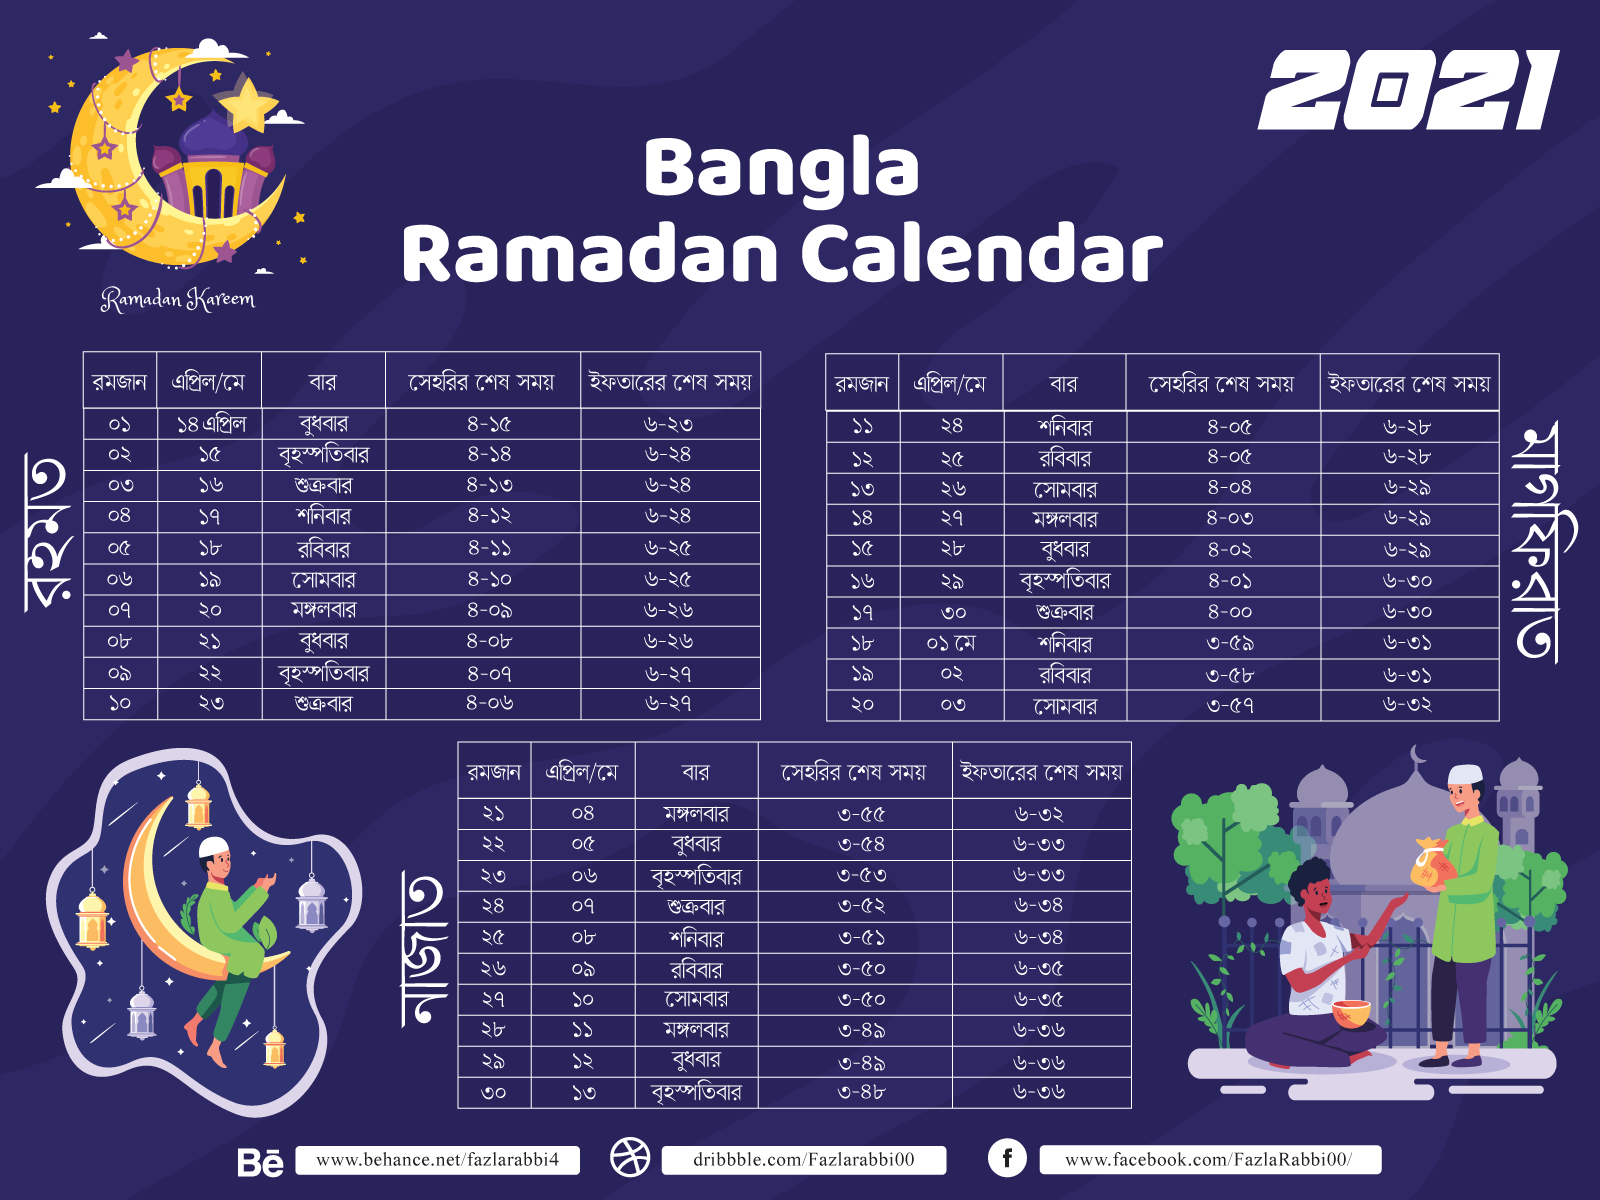 Bangla Ramadan Calendar by Fazla Rabbi on Dribbble